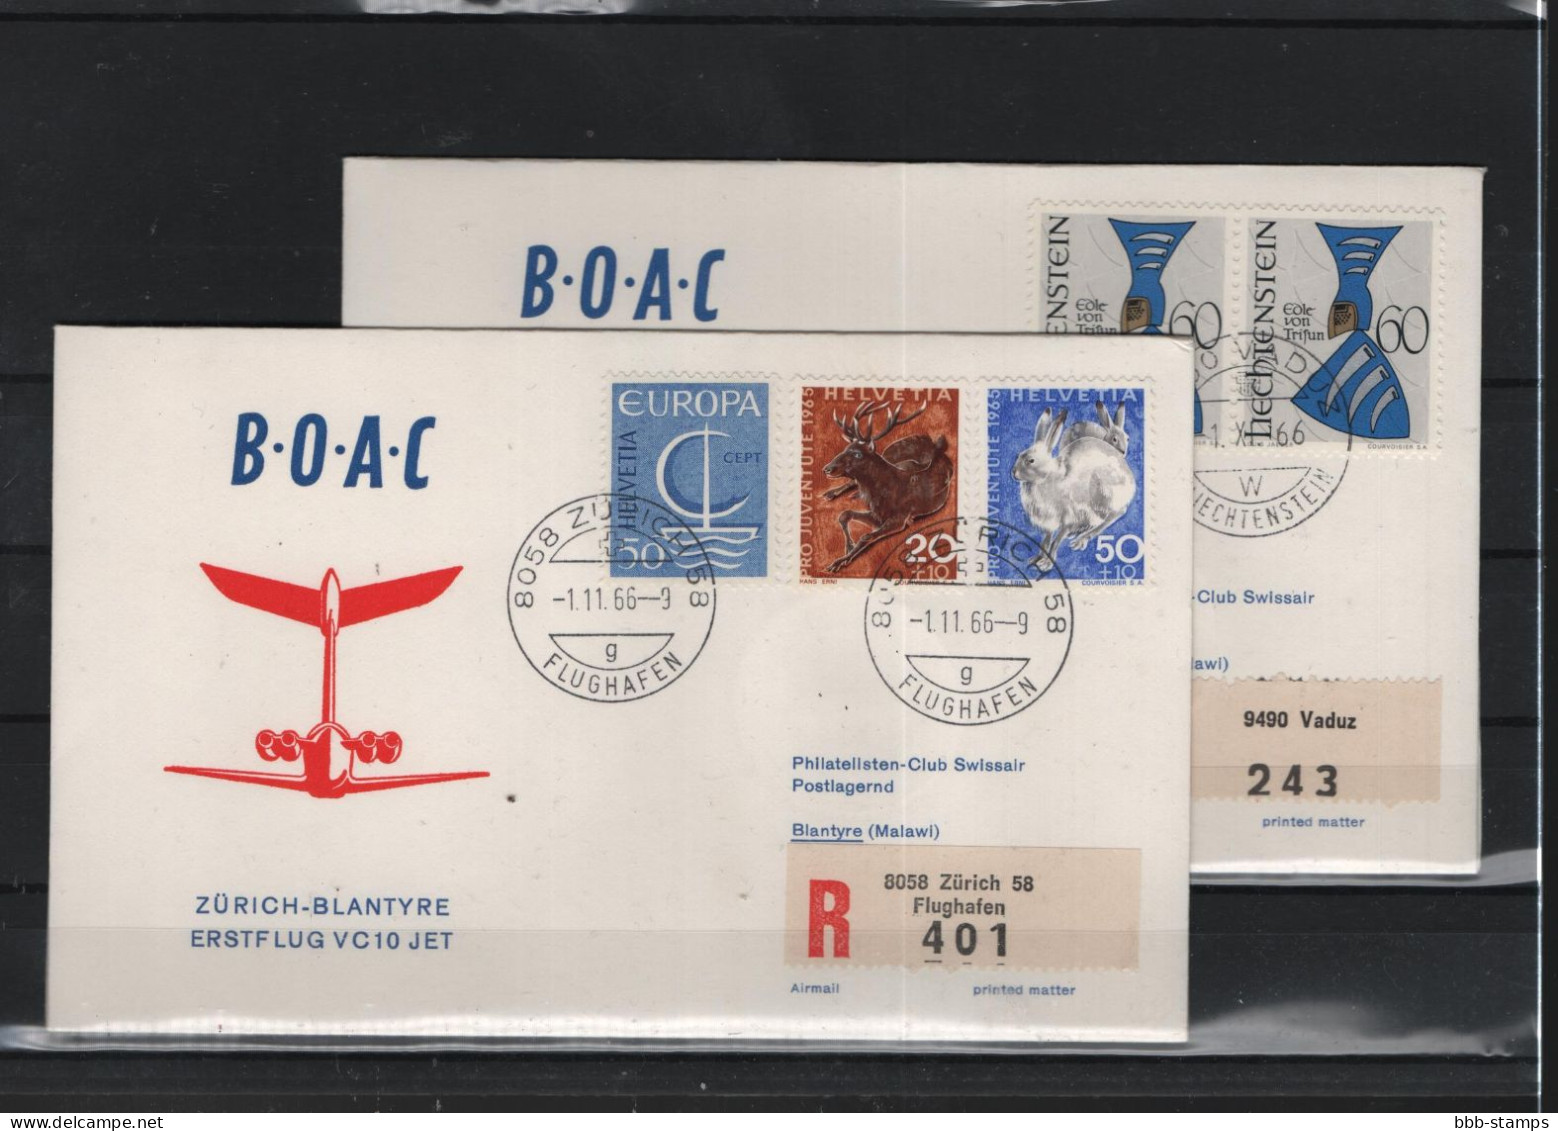 Schweiz Luftpost FFC BOAC 1.11.1966 Zürich - Blantyre Vv - Primi Voli